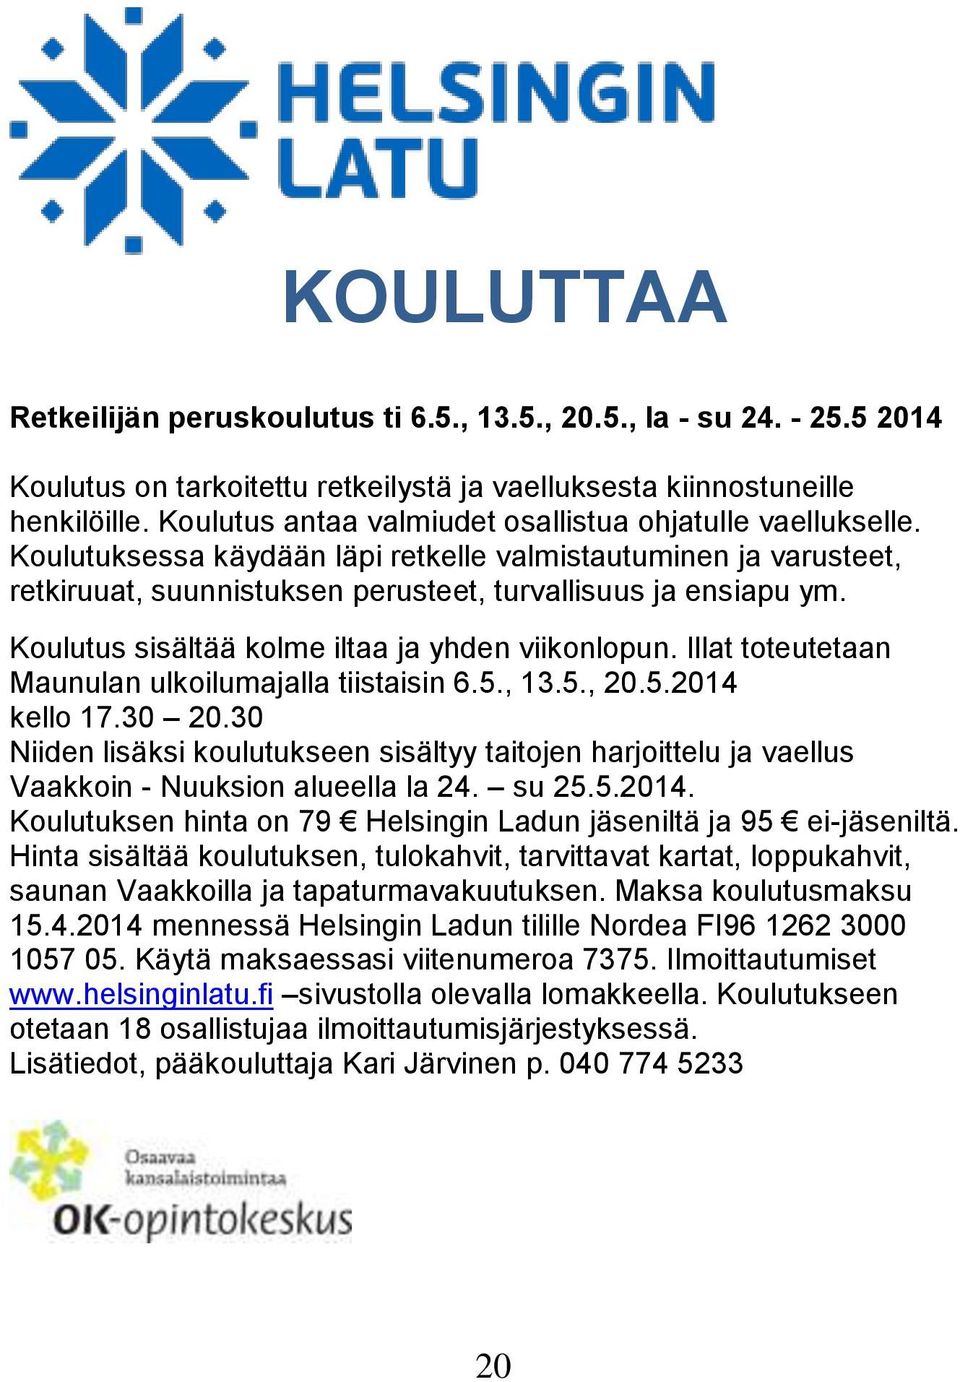 Koulutus sisältää kolme iltaa ja yhden viikonlopun. Illat toteutetaan Maunulan ulkoilumajalla tiistaisin 6.5., 13.5., 20.5.2014 kello 17.30 20.